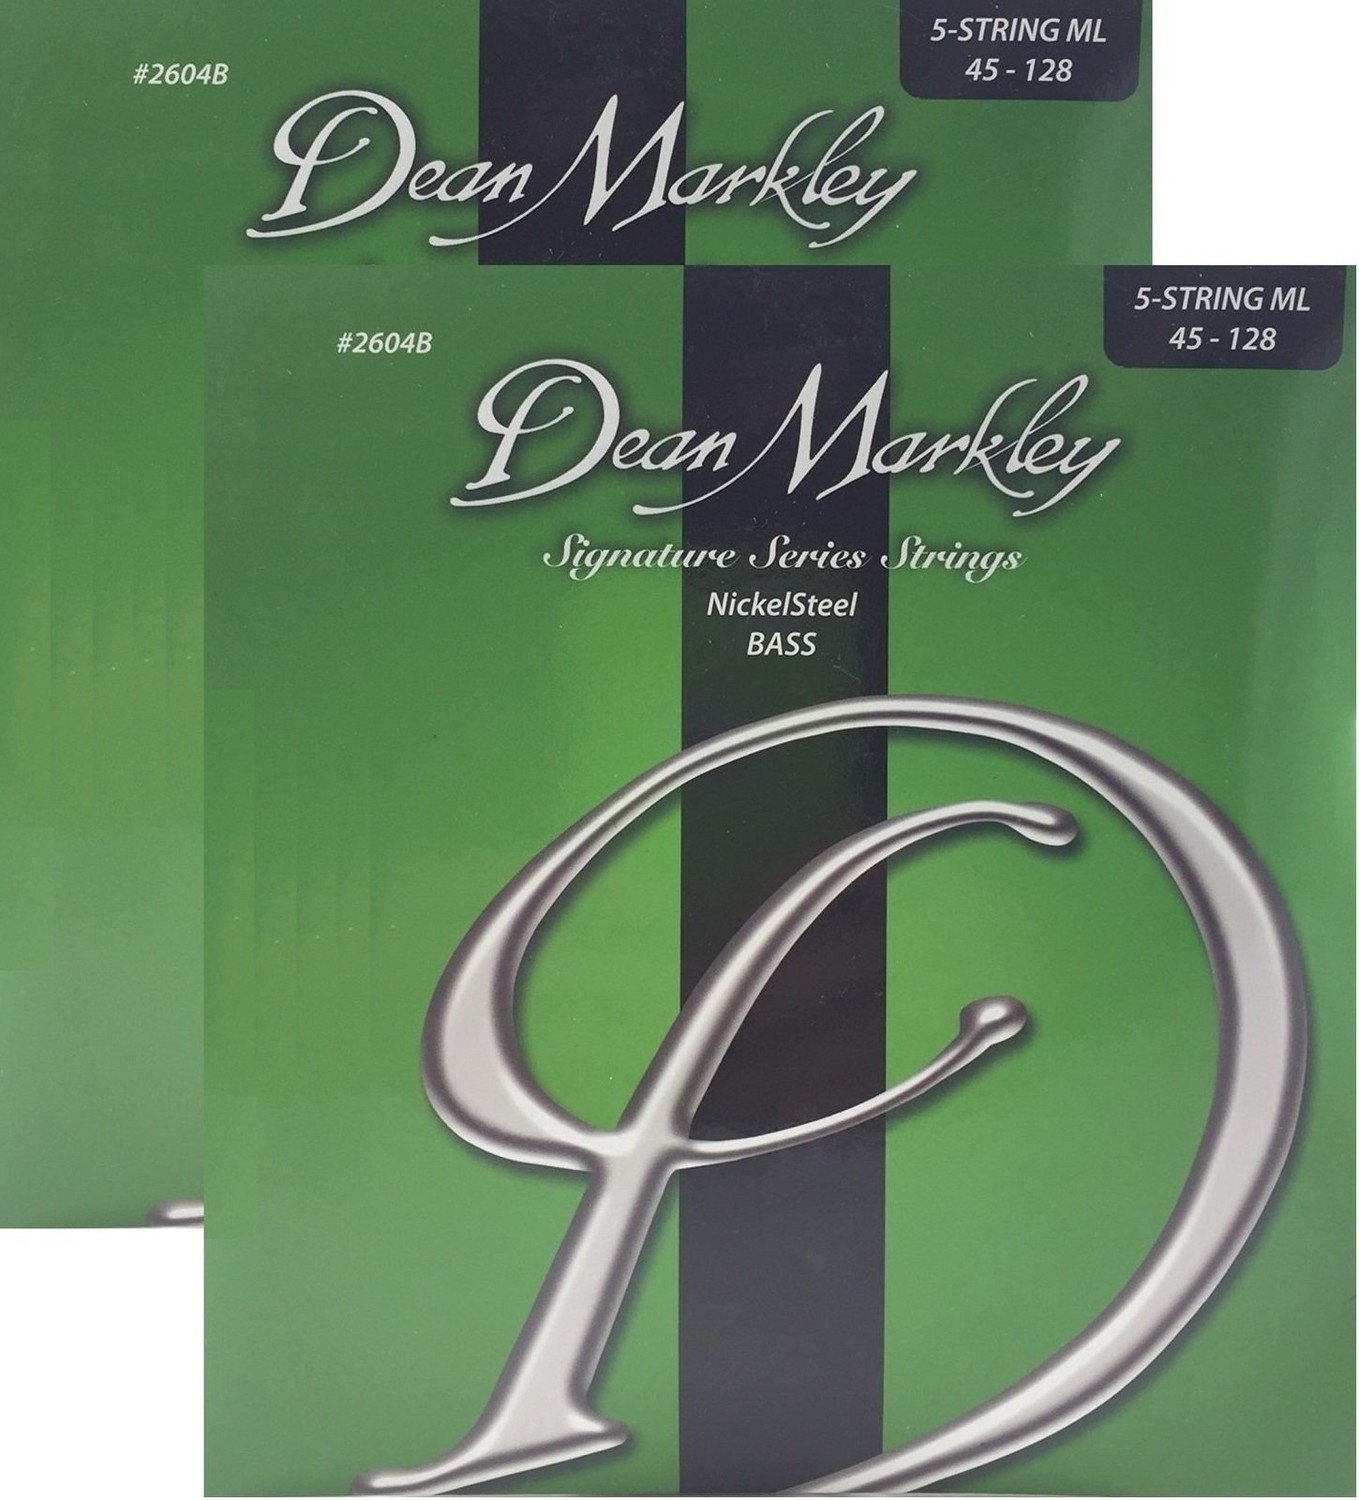 Dean Markley 2604B-2PK 5ML 45-128 NickelSteel